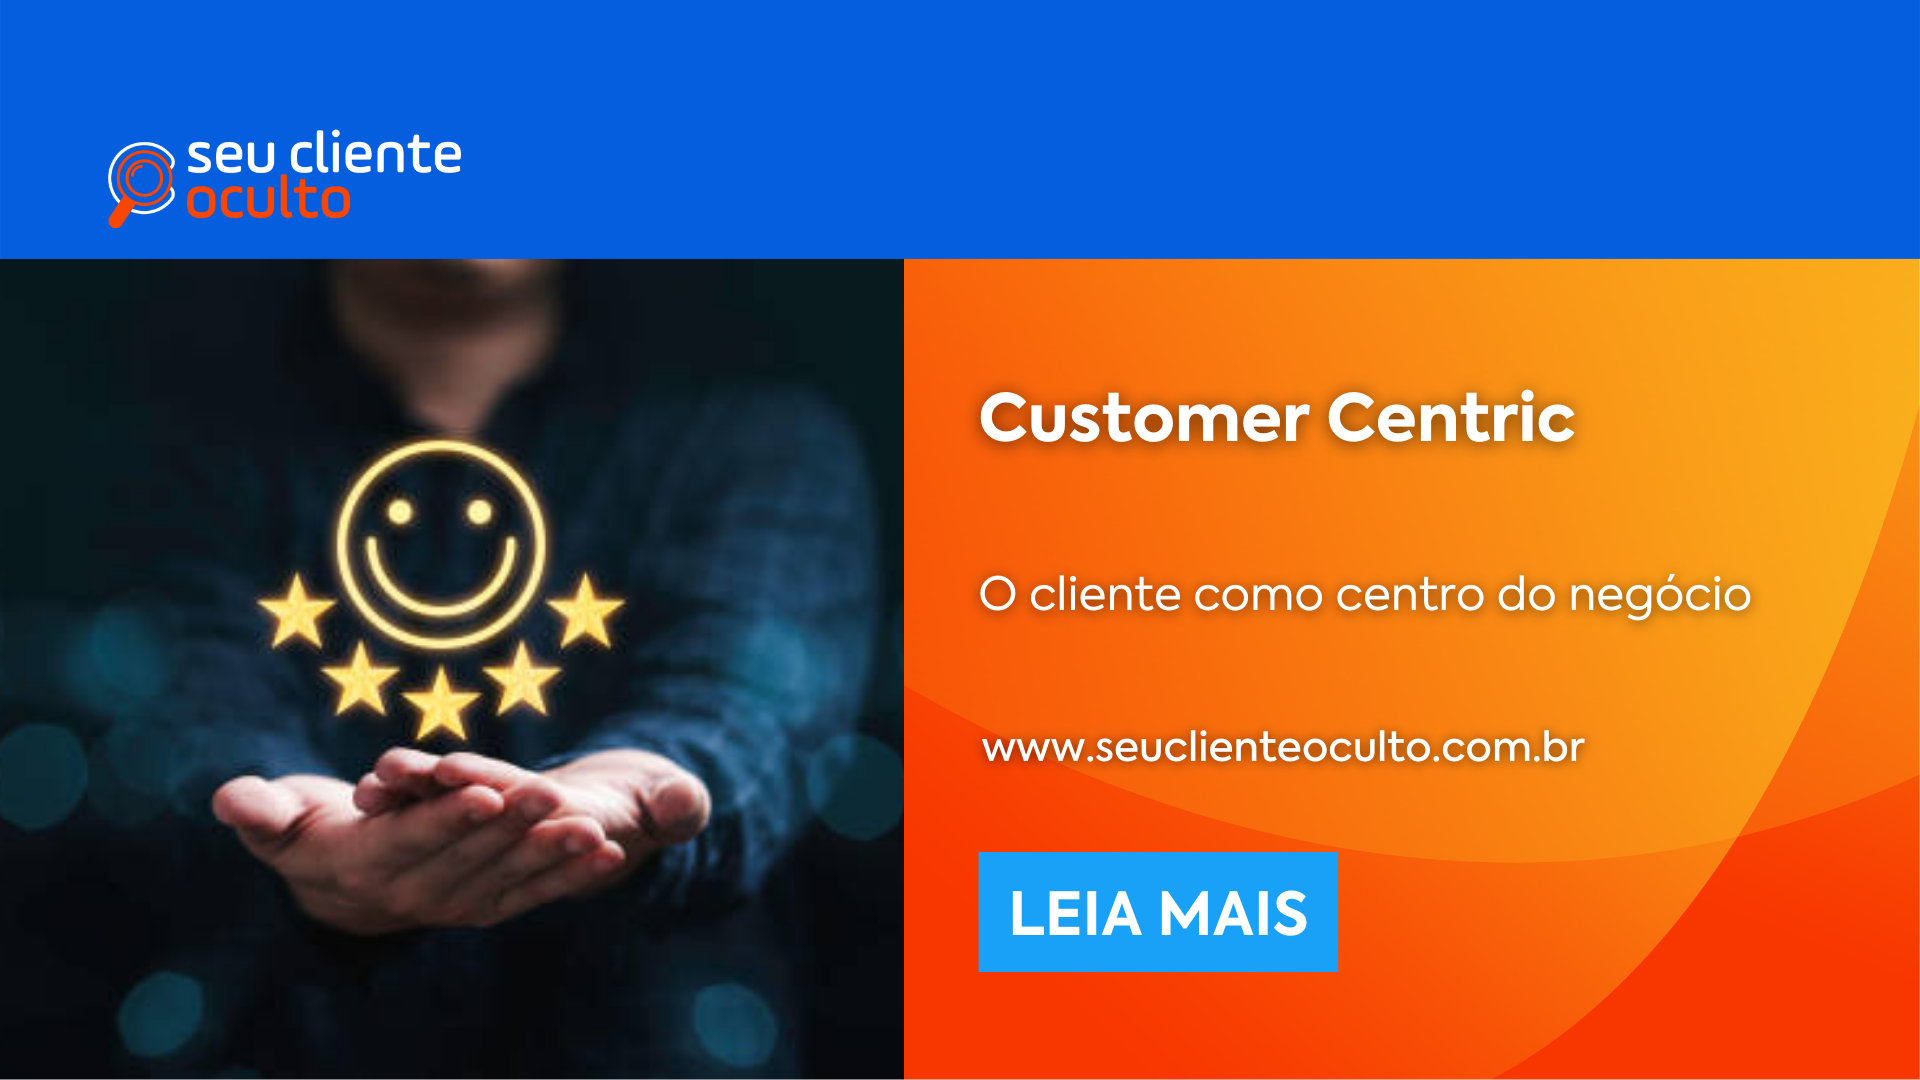 Customer Centric: O cliente como centro do negócio - Seu Cliente Oculto